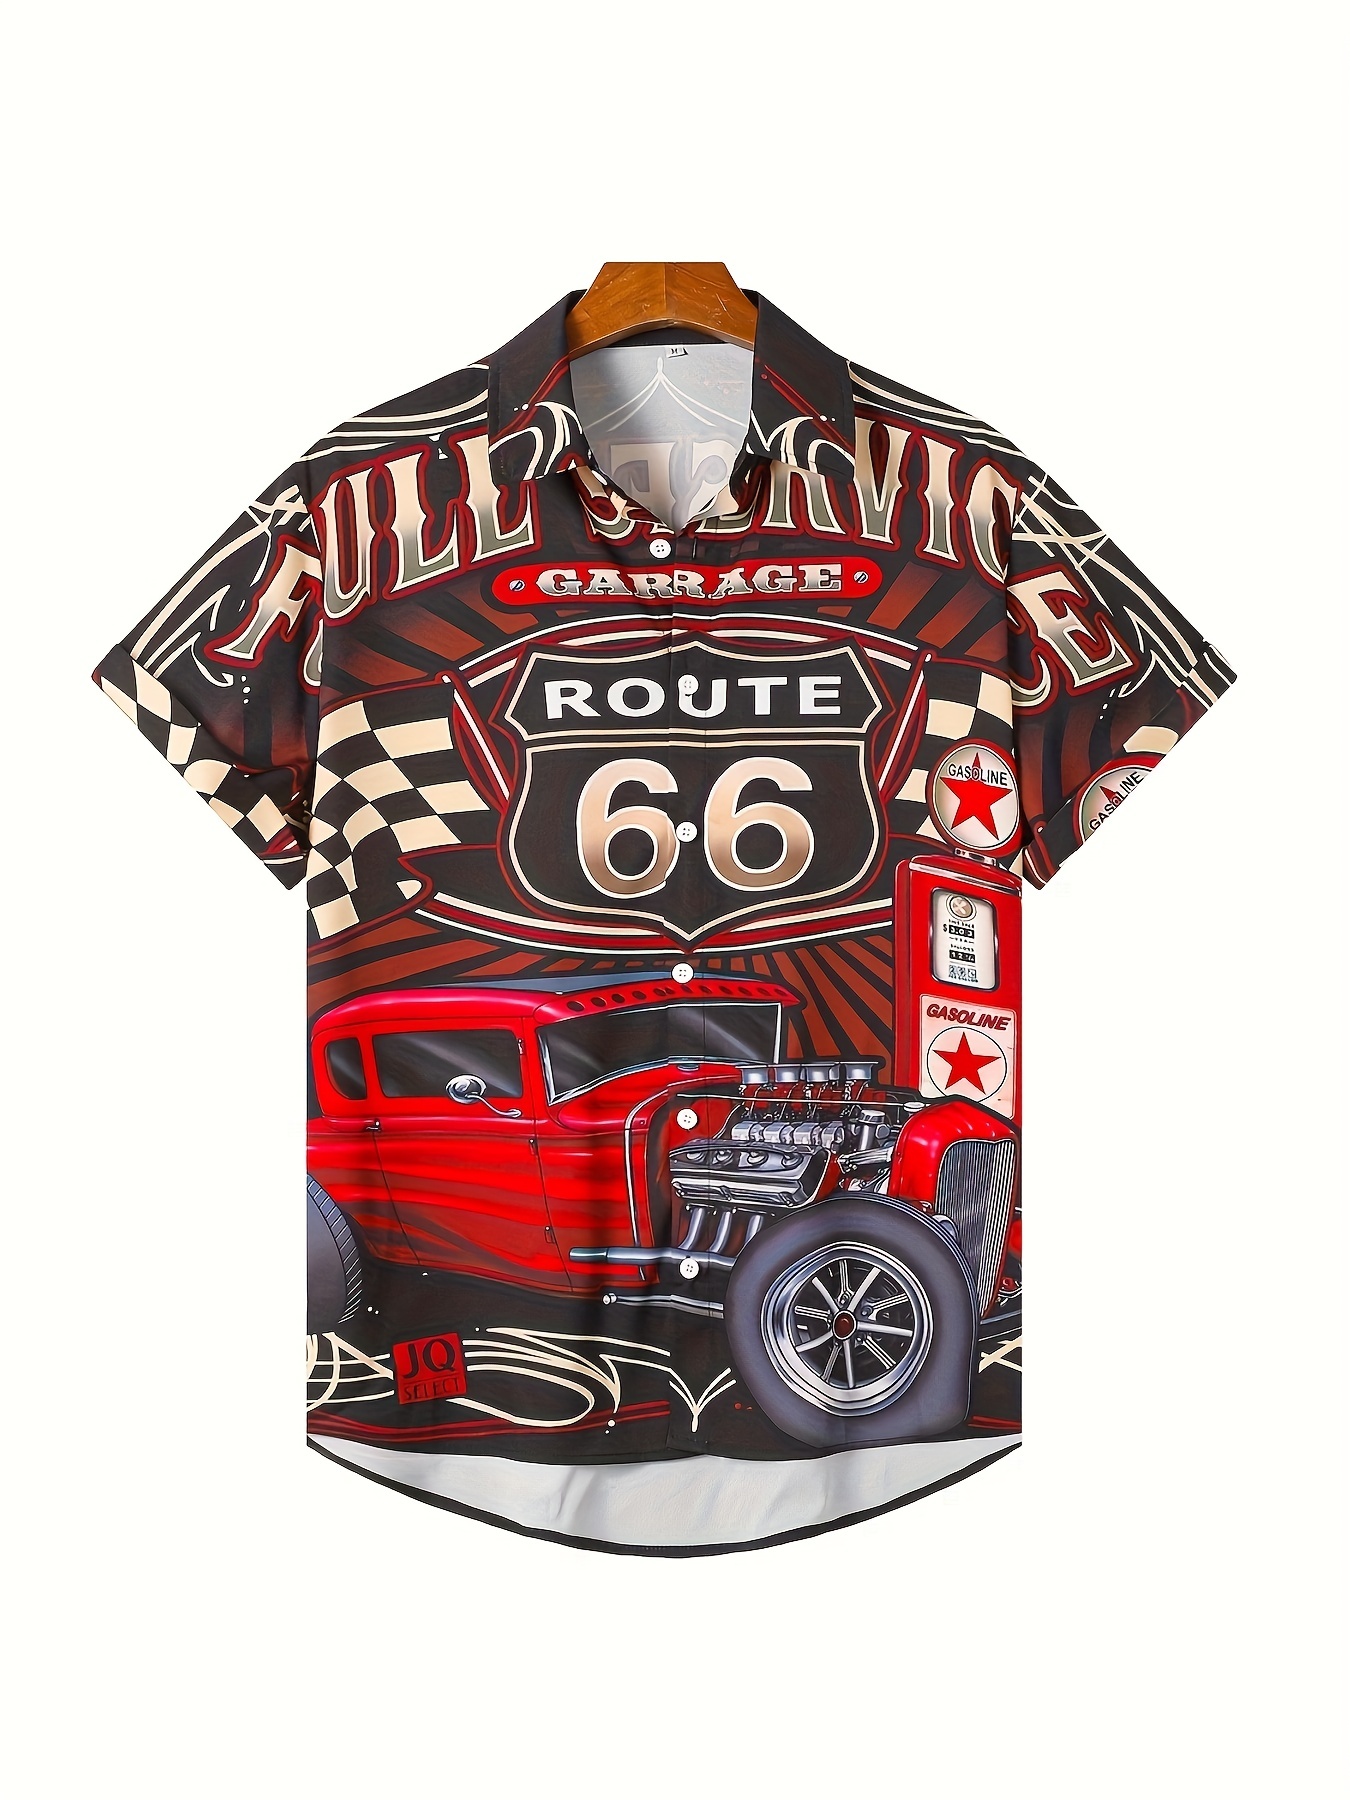 Black Route 66 Corvette T-Shirt - Vintage Classic Car Enthusiast Apparel